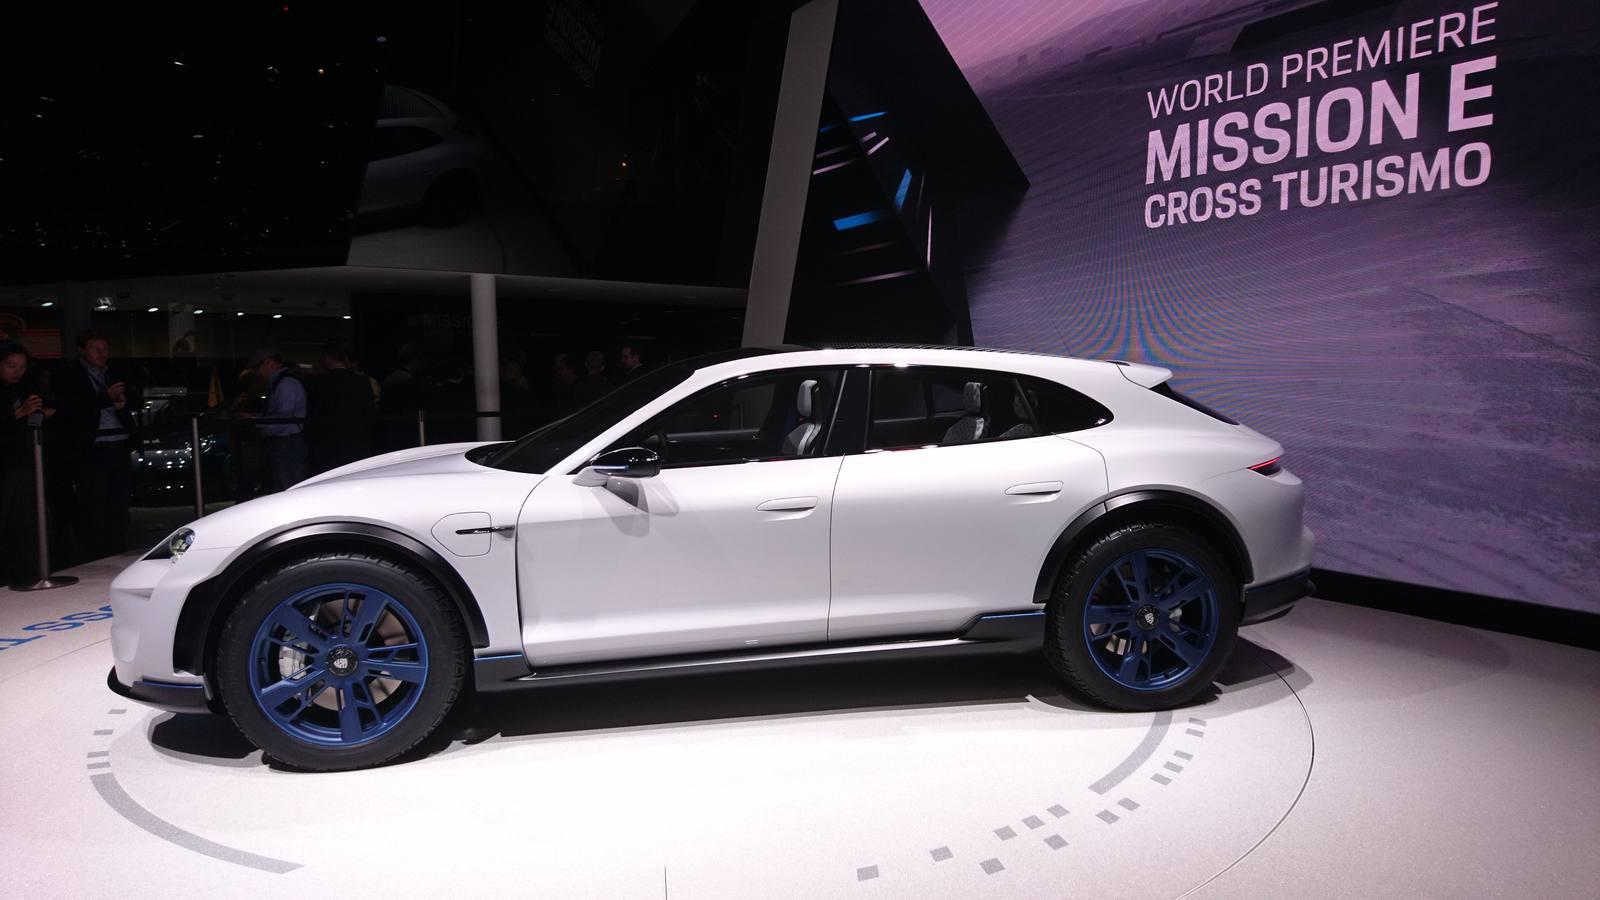 Con el Mission E Cross Turismo, Porsche presenta en el Salón del Automóvil de Ginebra un estudio conceptual a partir de un Cross-Utility Vehicle (CUV), con propulsión eléctrica. 